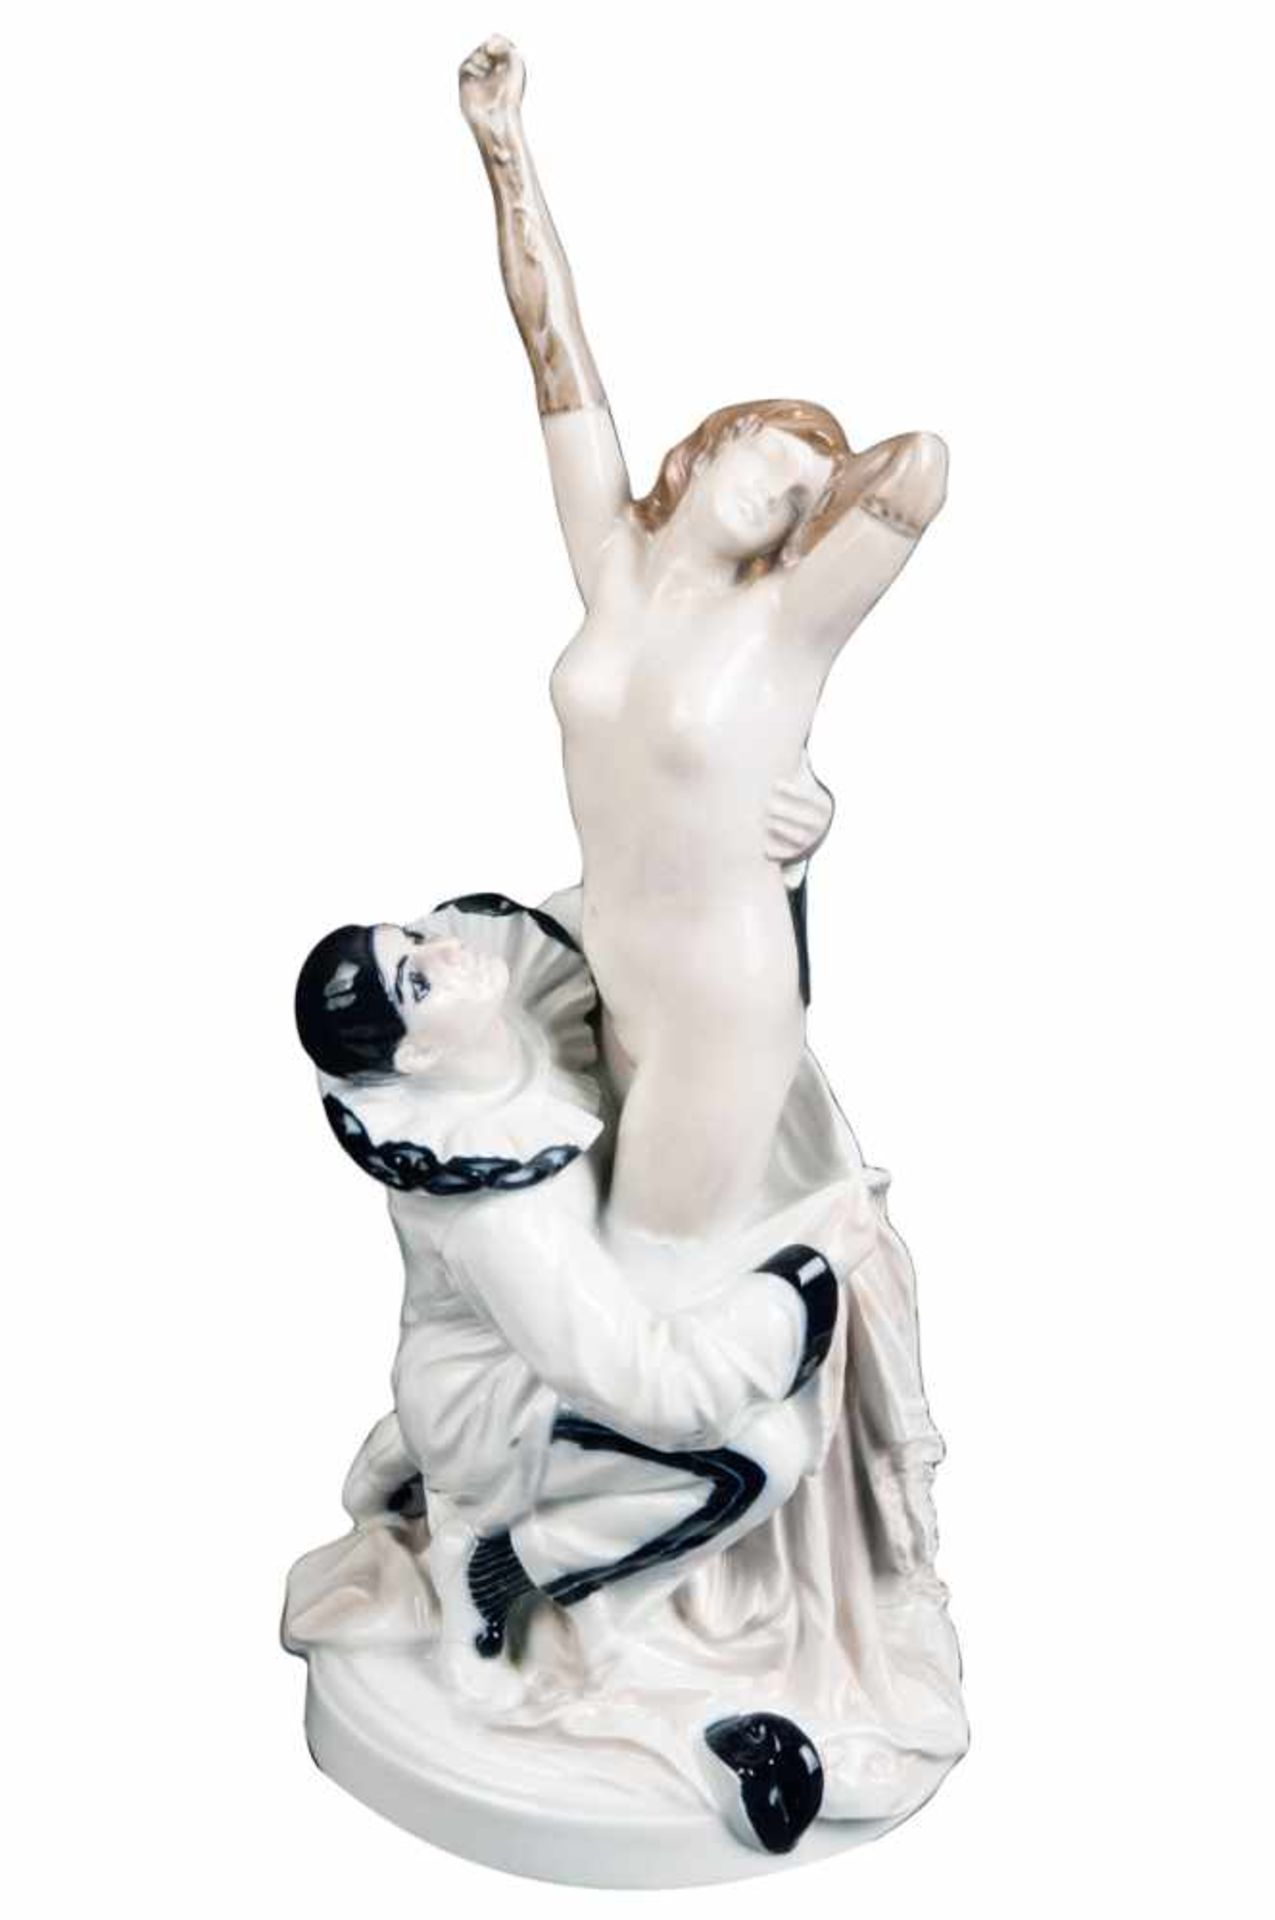 Fasching (Pierrot entkleidet Colombine). Rosenthal 1910-1911. Porzellan, bunt bemalt. Am Boden